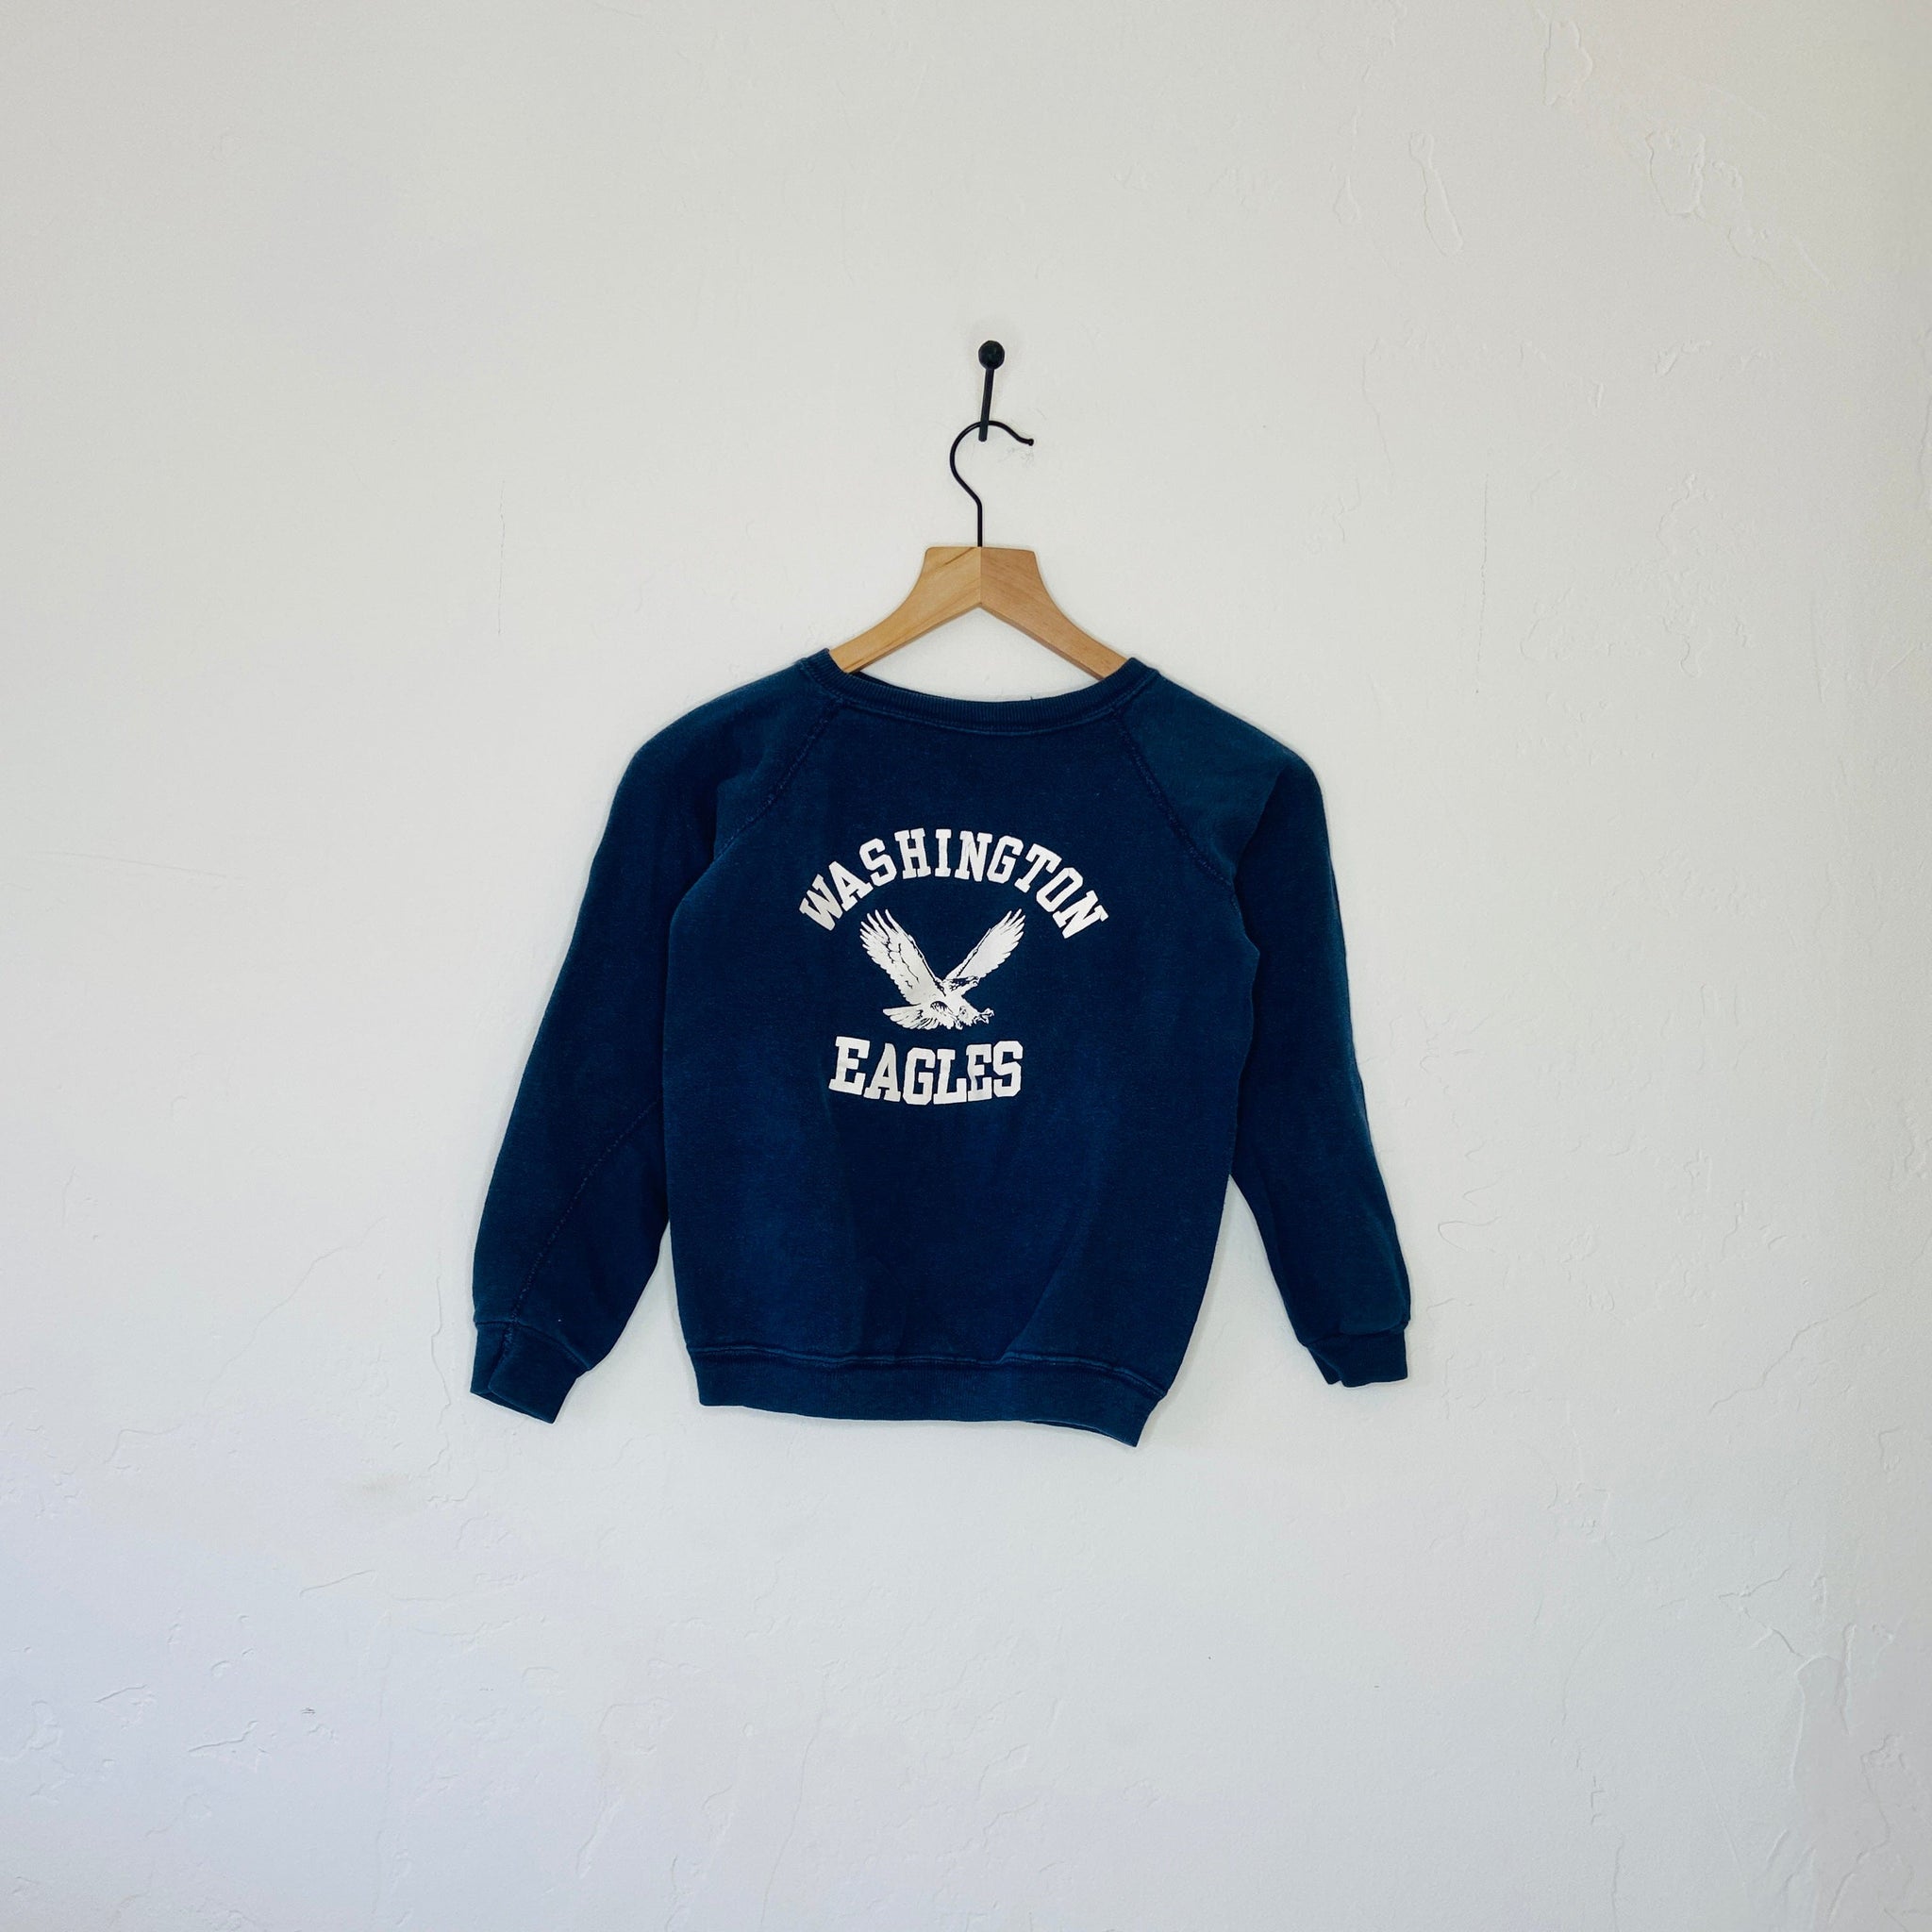 Benbrook Farms Apparel & Accessories Vintage Sweatshirts